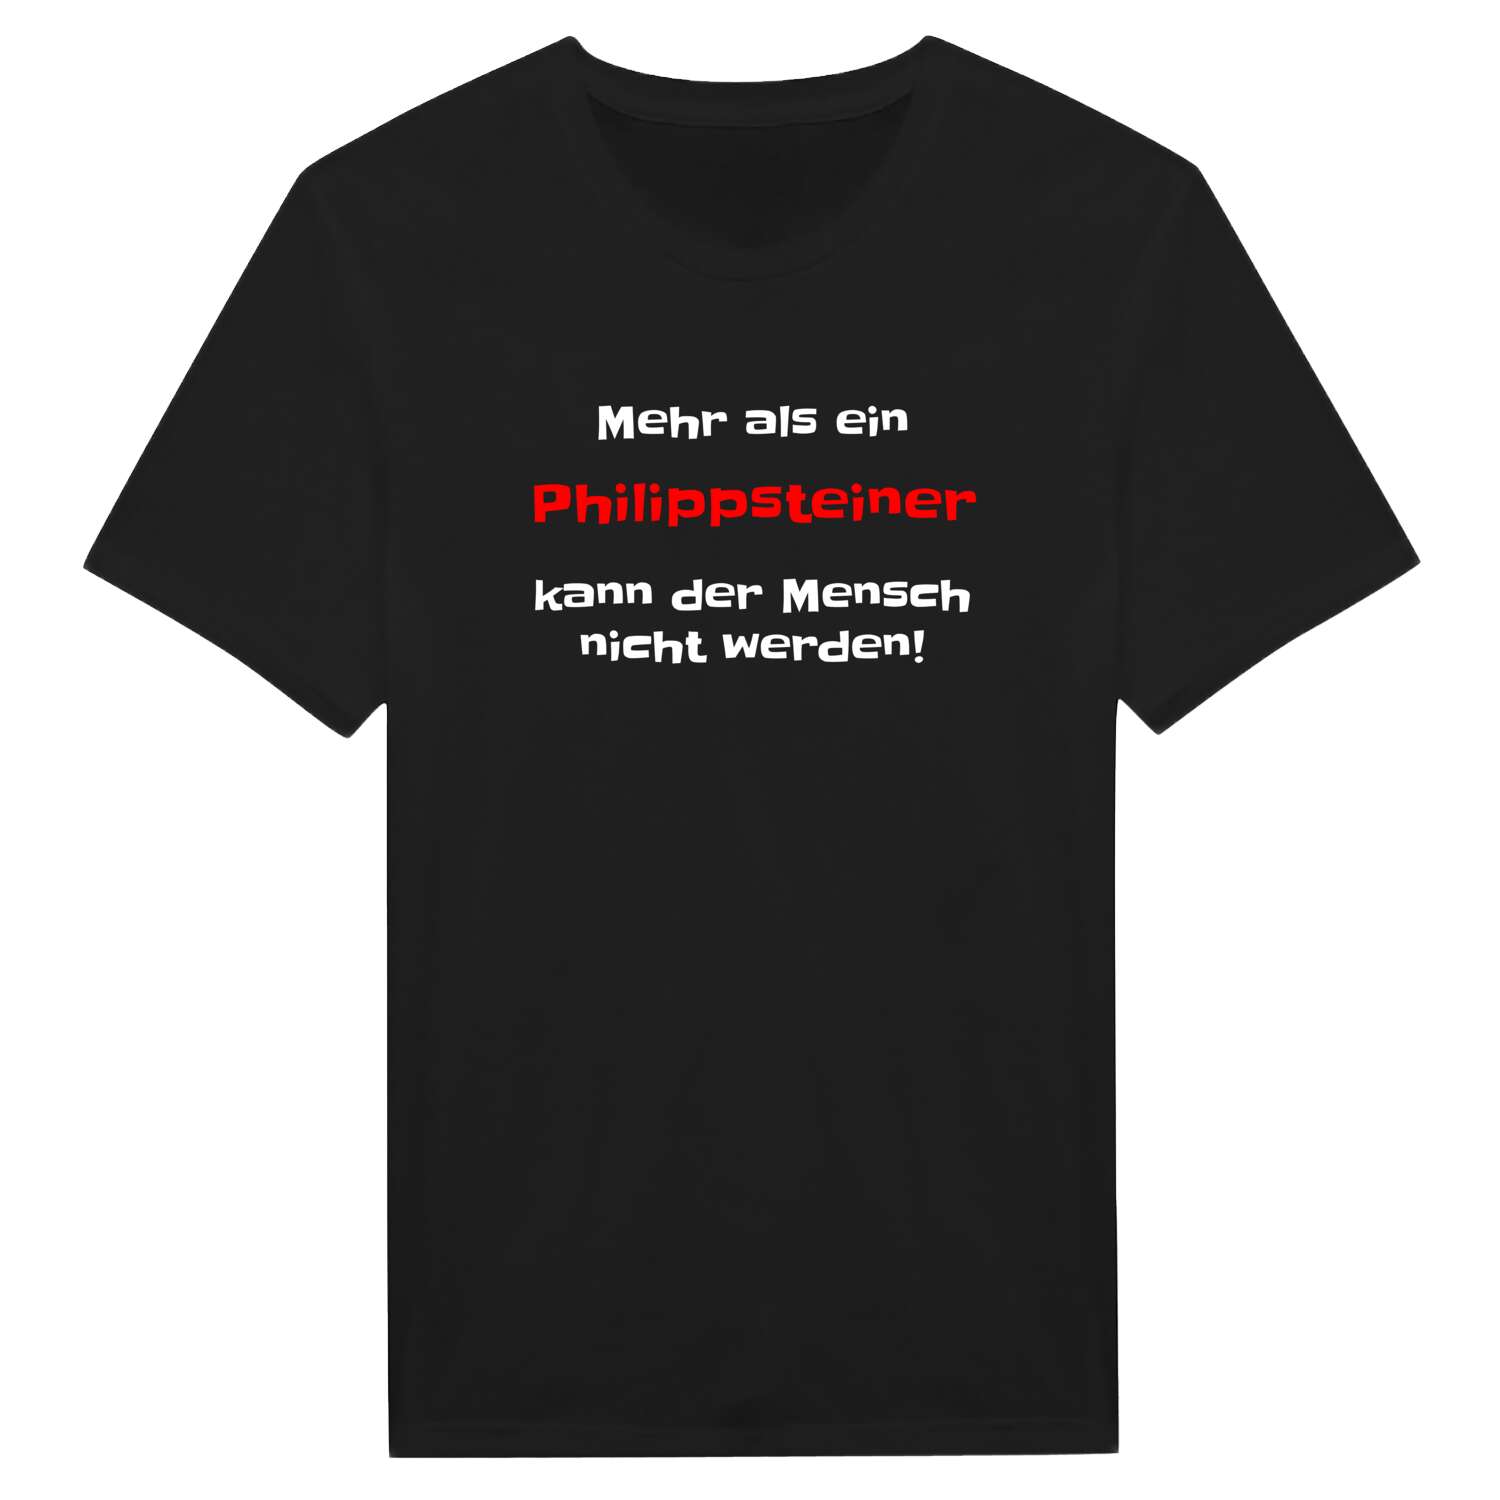 Philippstein T-Shirt »Mehr als ein«